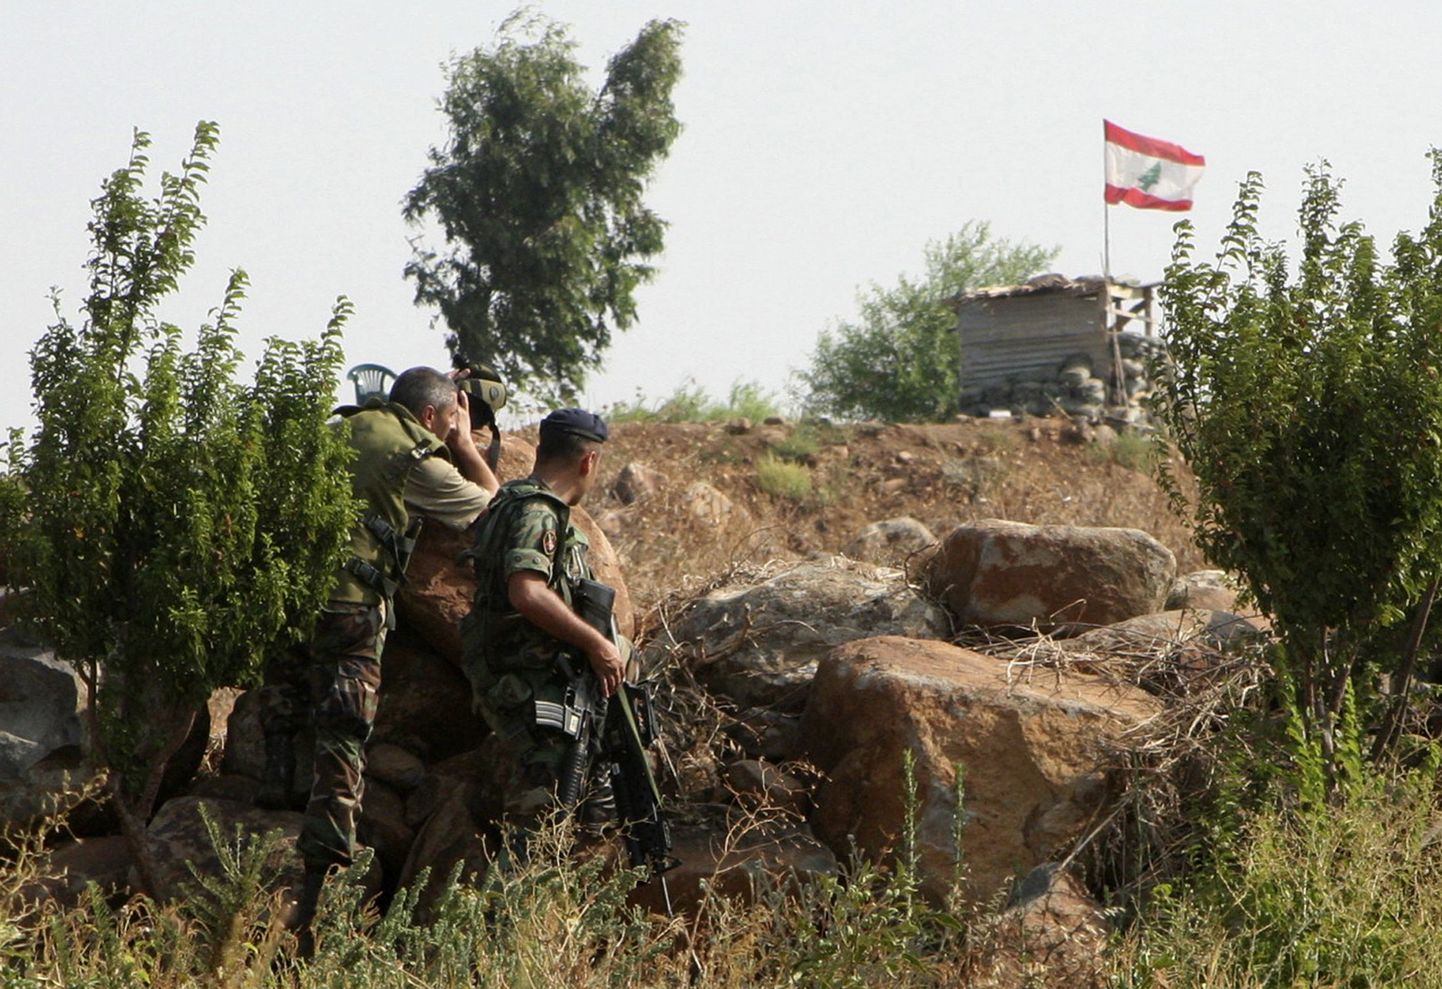 Liibanoni sõdurid on oma positsioonidel Wazzani küla lähistel.